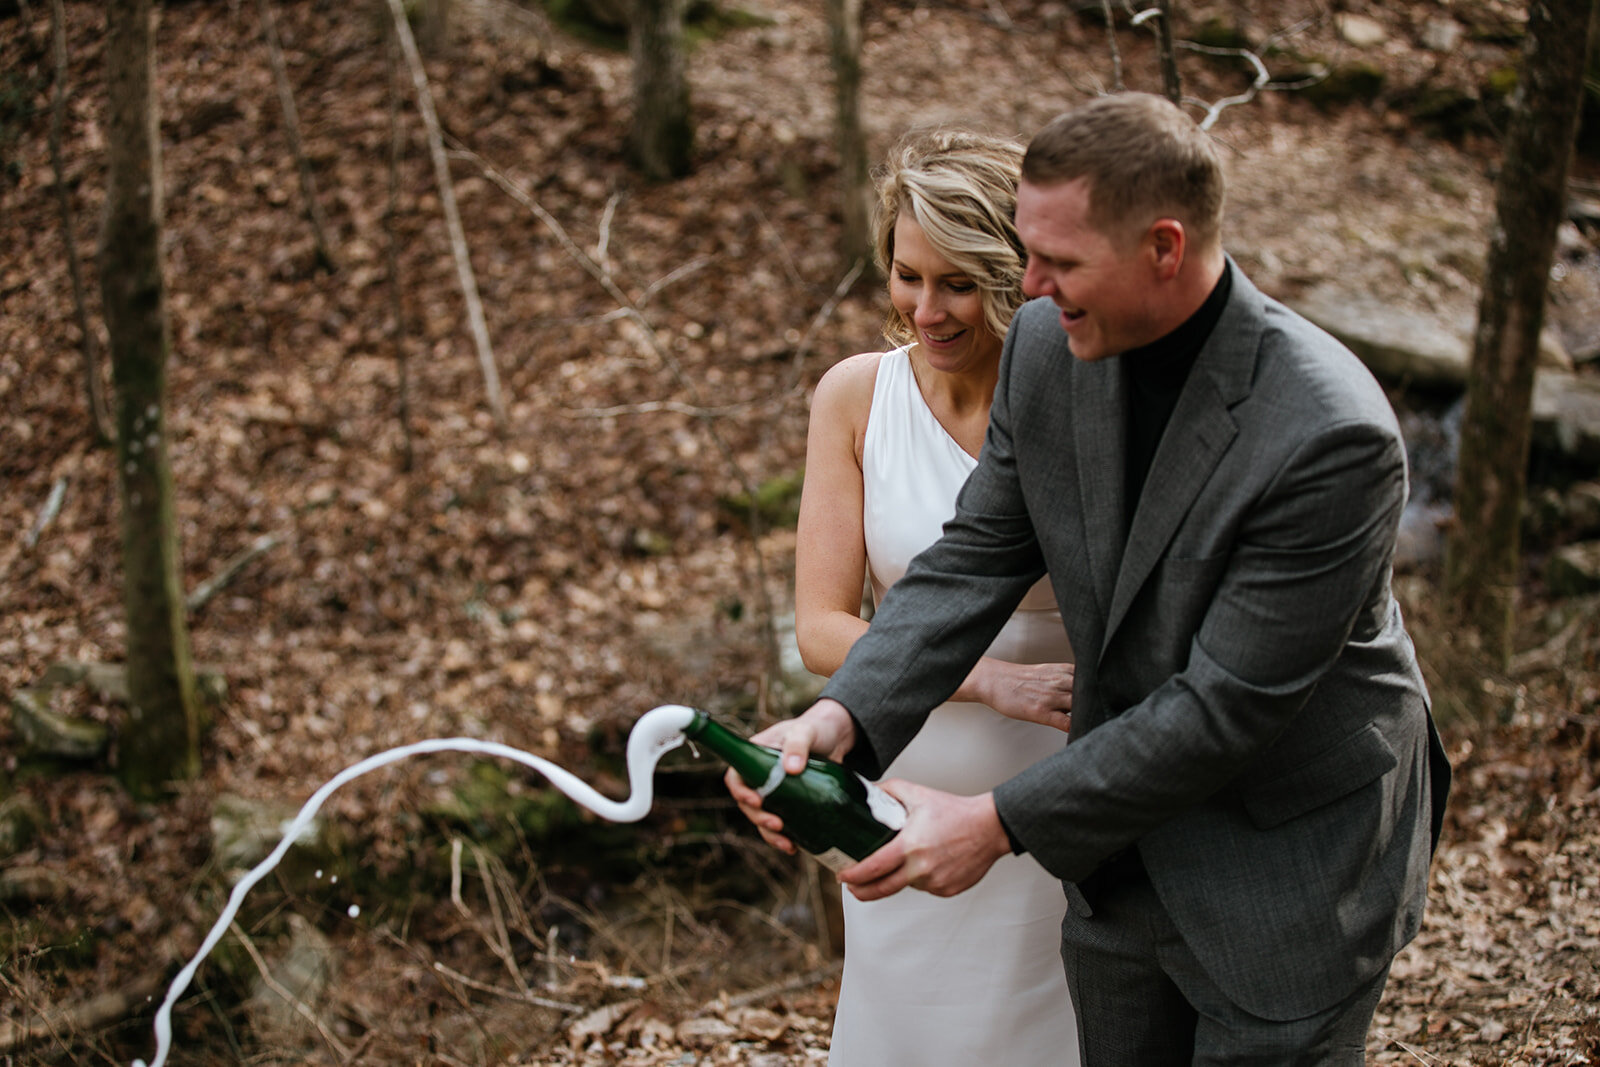 snoopers-rock-adventure-elopement-chattanooga-wedding-photographerfoster-falls-elopement-chattanooga-wedding-photographer-574_websize.jpg